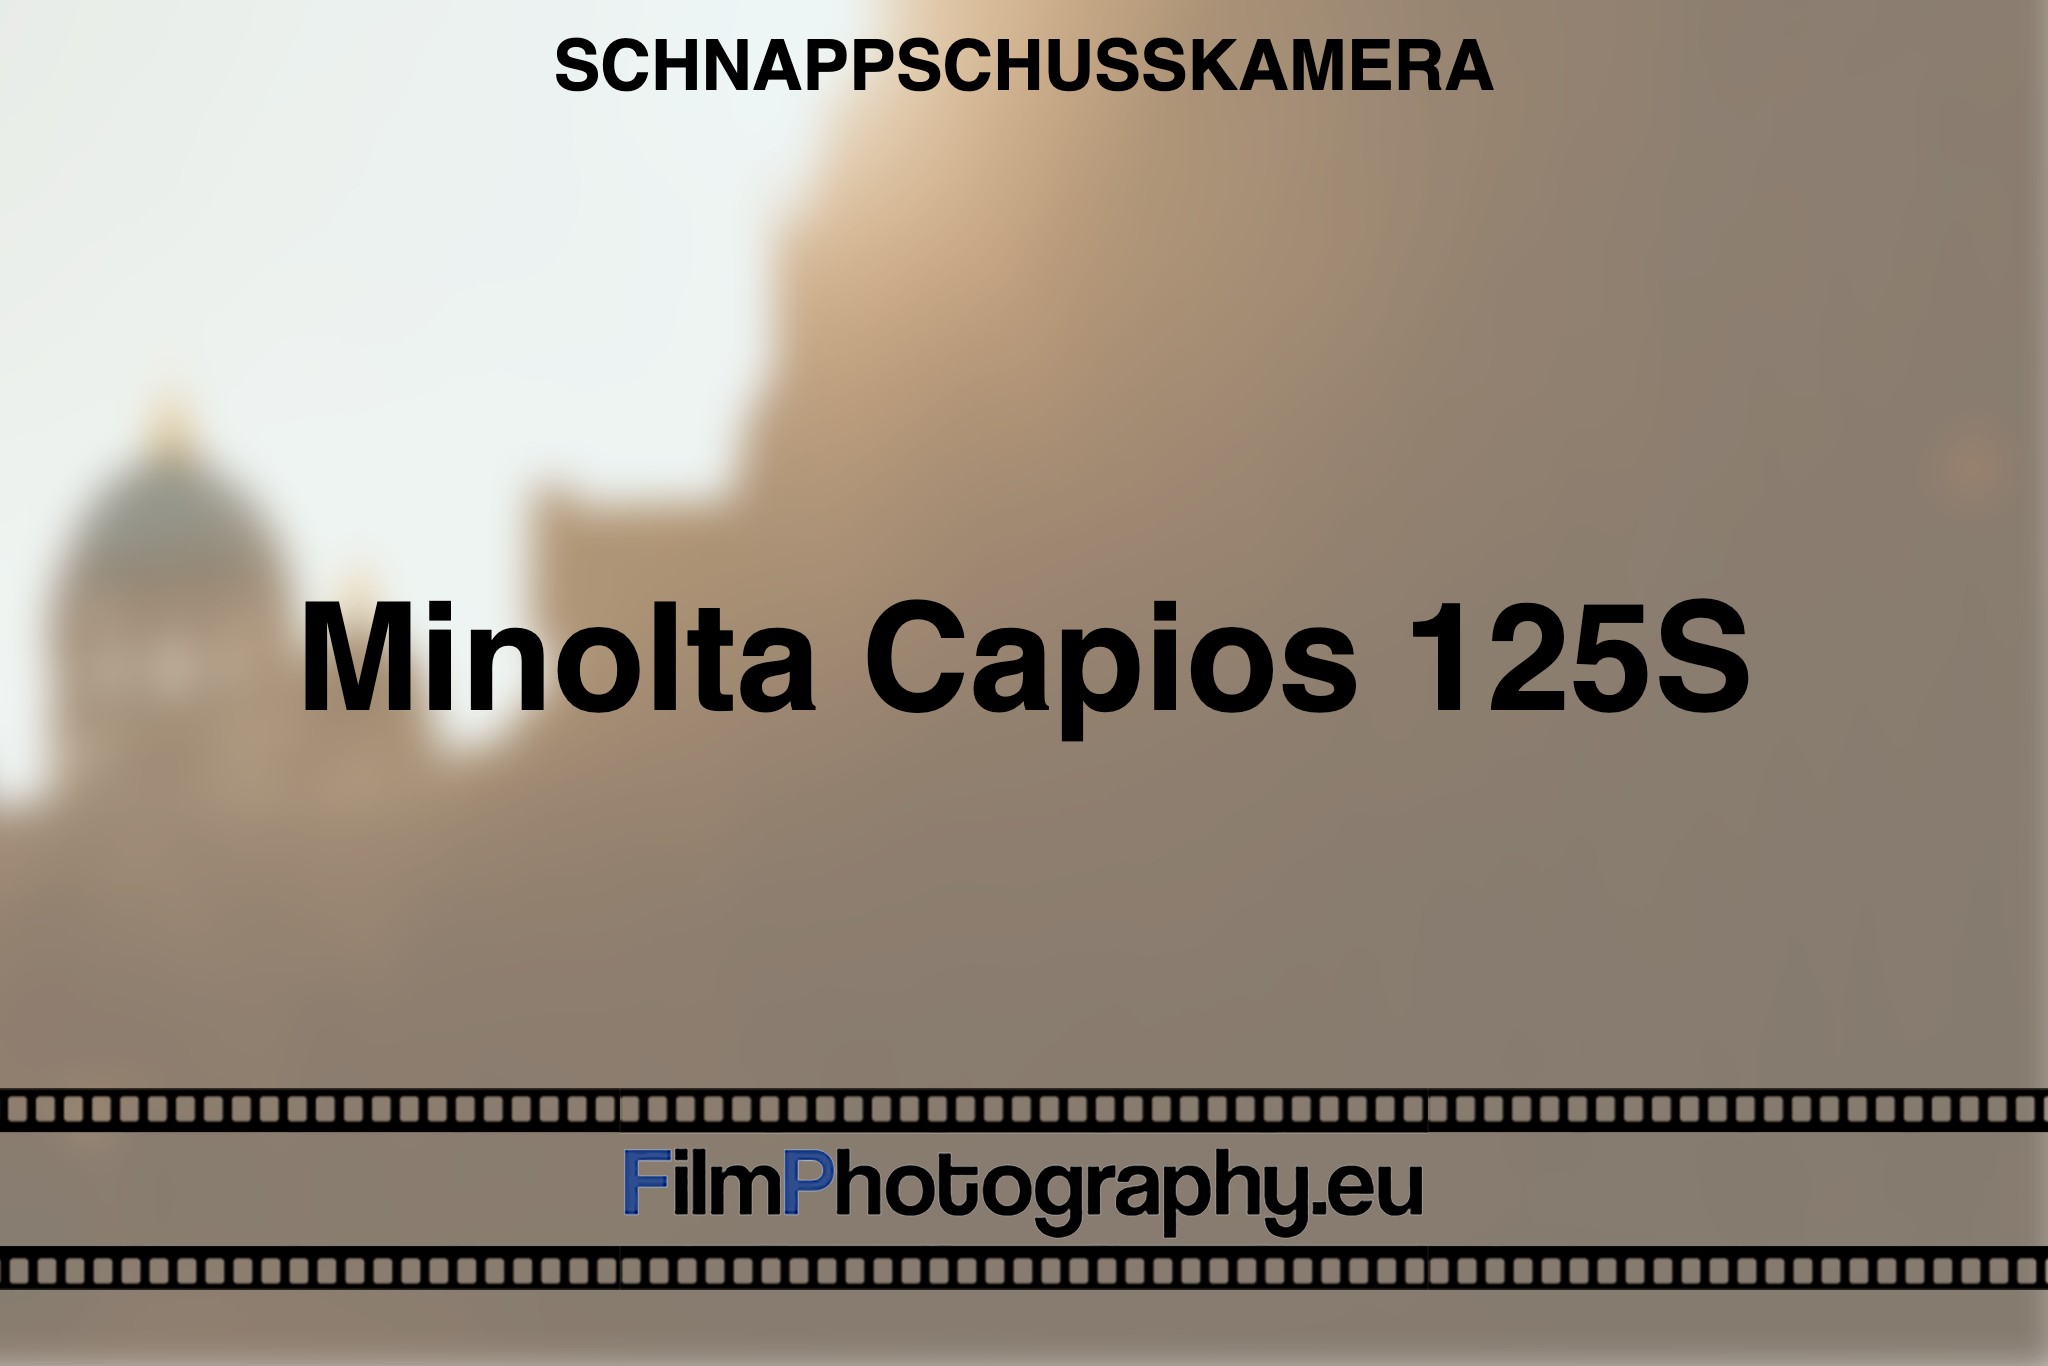 minolta-capios-125s-schnappschusskamera-bnv